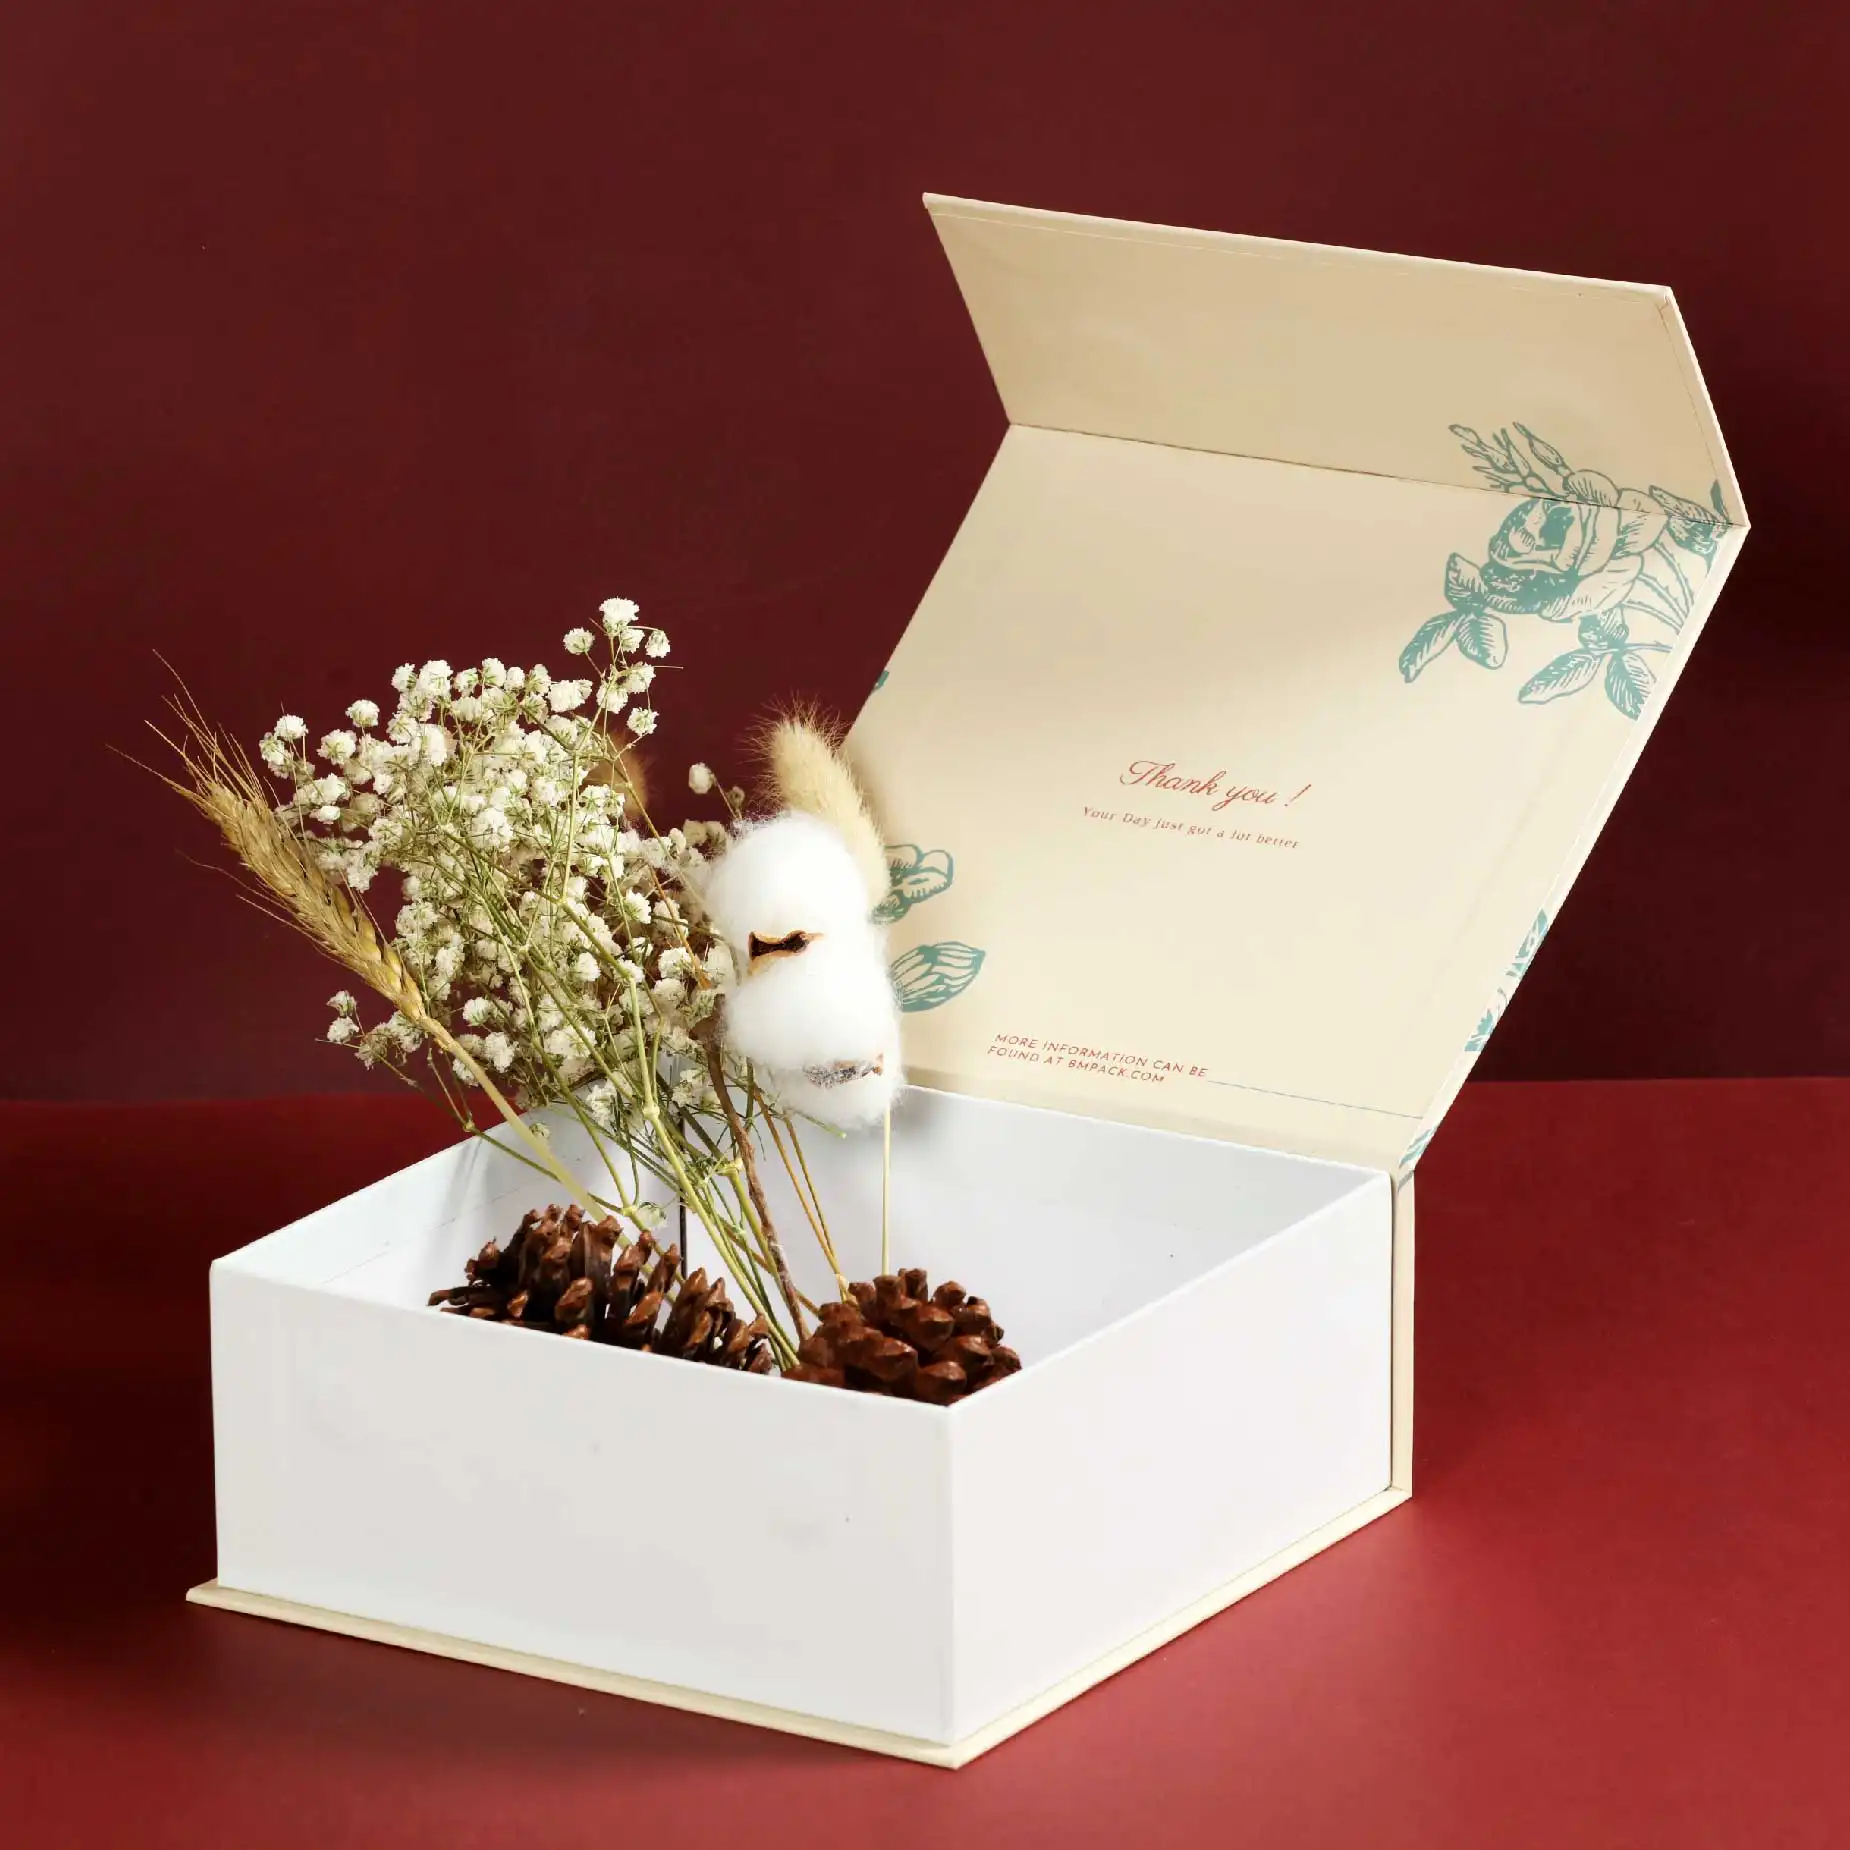 在深紅色的背景下，一個打開了蓋子的磁石書型硬盒，蓋內印有淡黃底色及淺綠色植物圖案。盒內放有五枝乾花和兩顆松果。